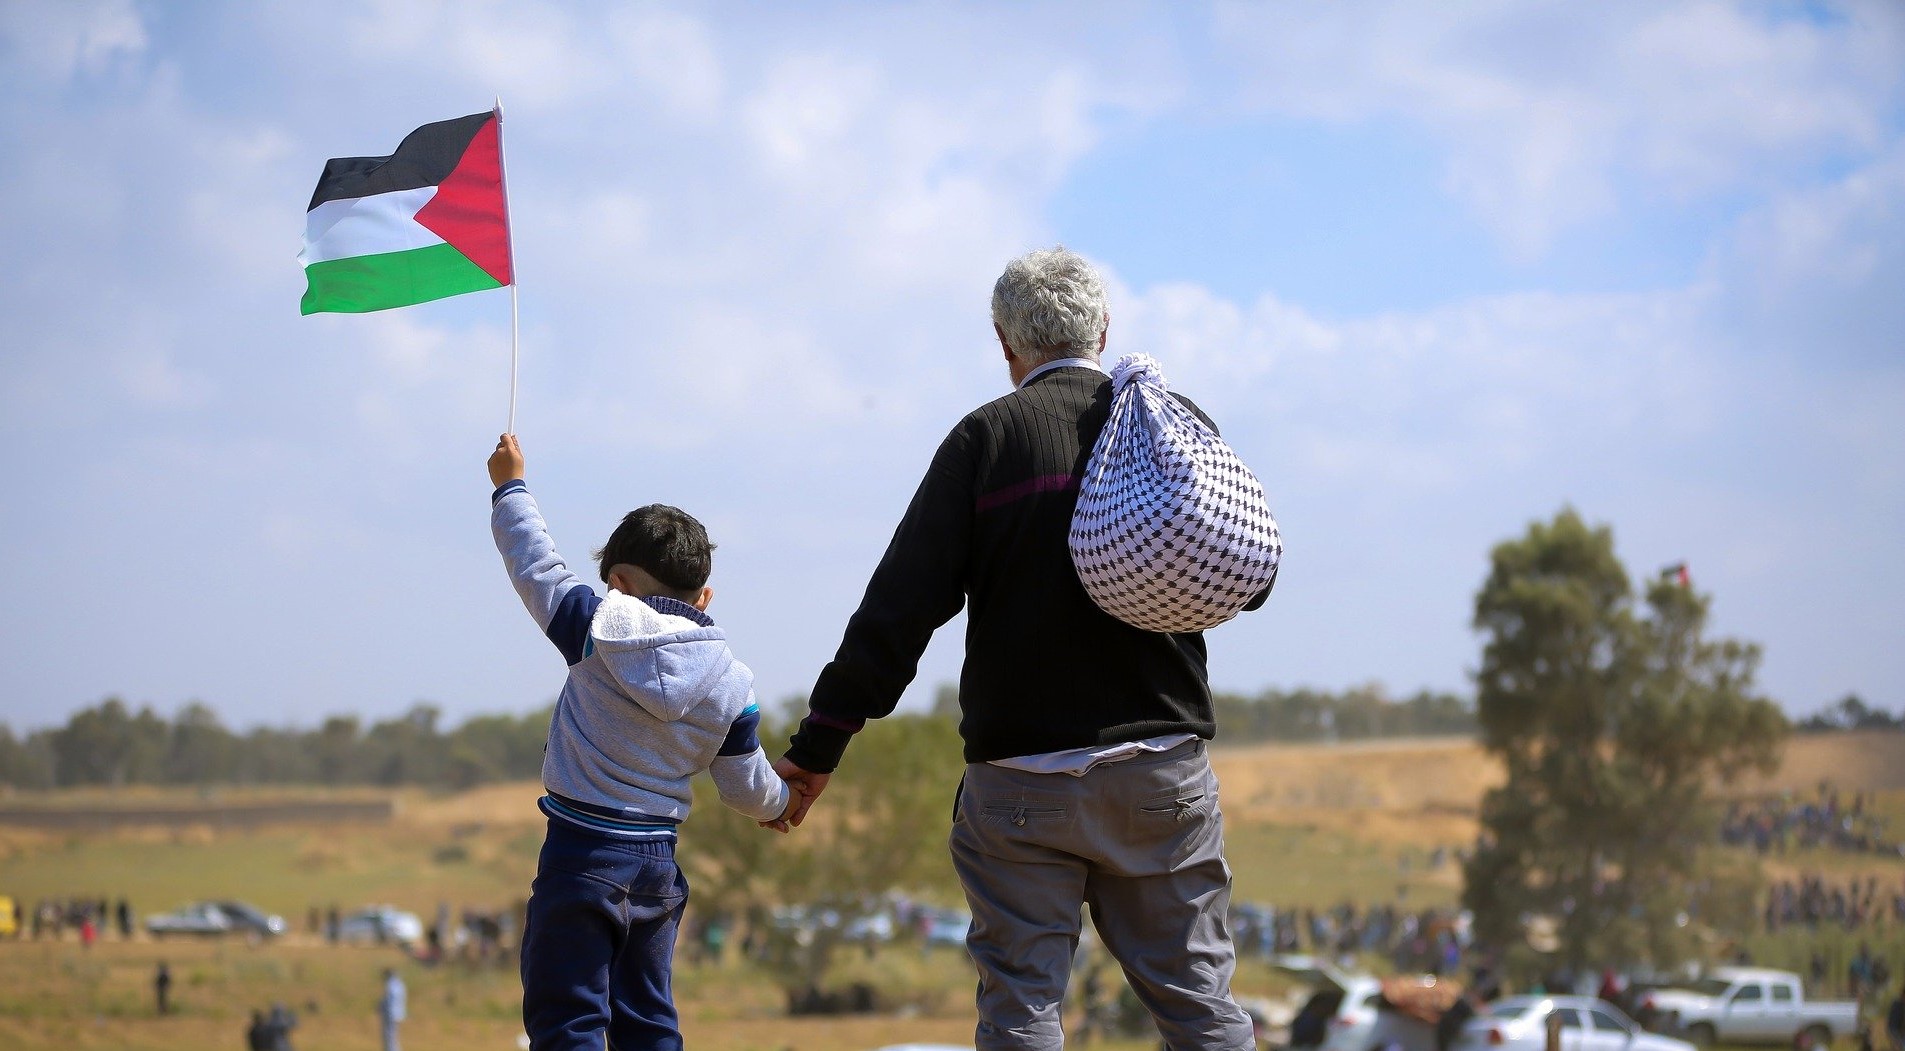 Un bambino per mano al nonno sono in piedi su una macchina e guardano l'orizzonte. Il bambino sventola una bandiera palestinese e il nonno ha una kefiah sulle spalle